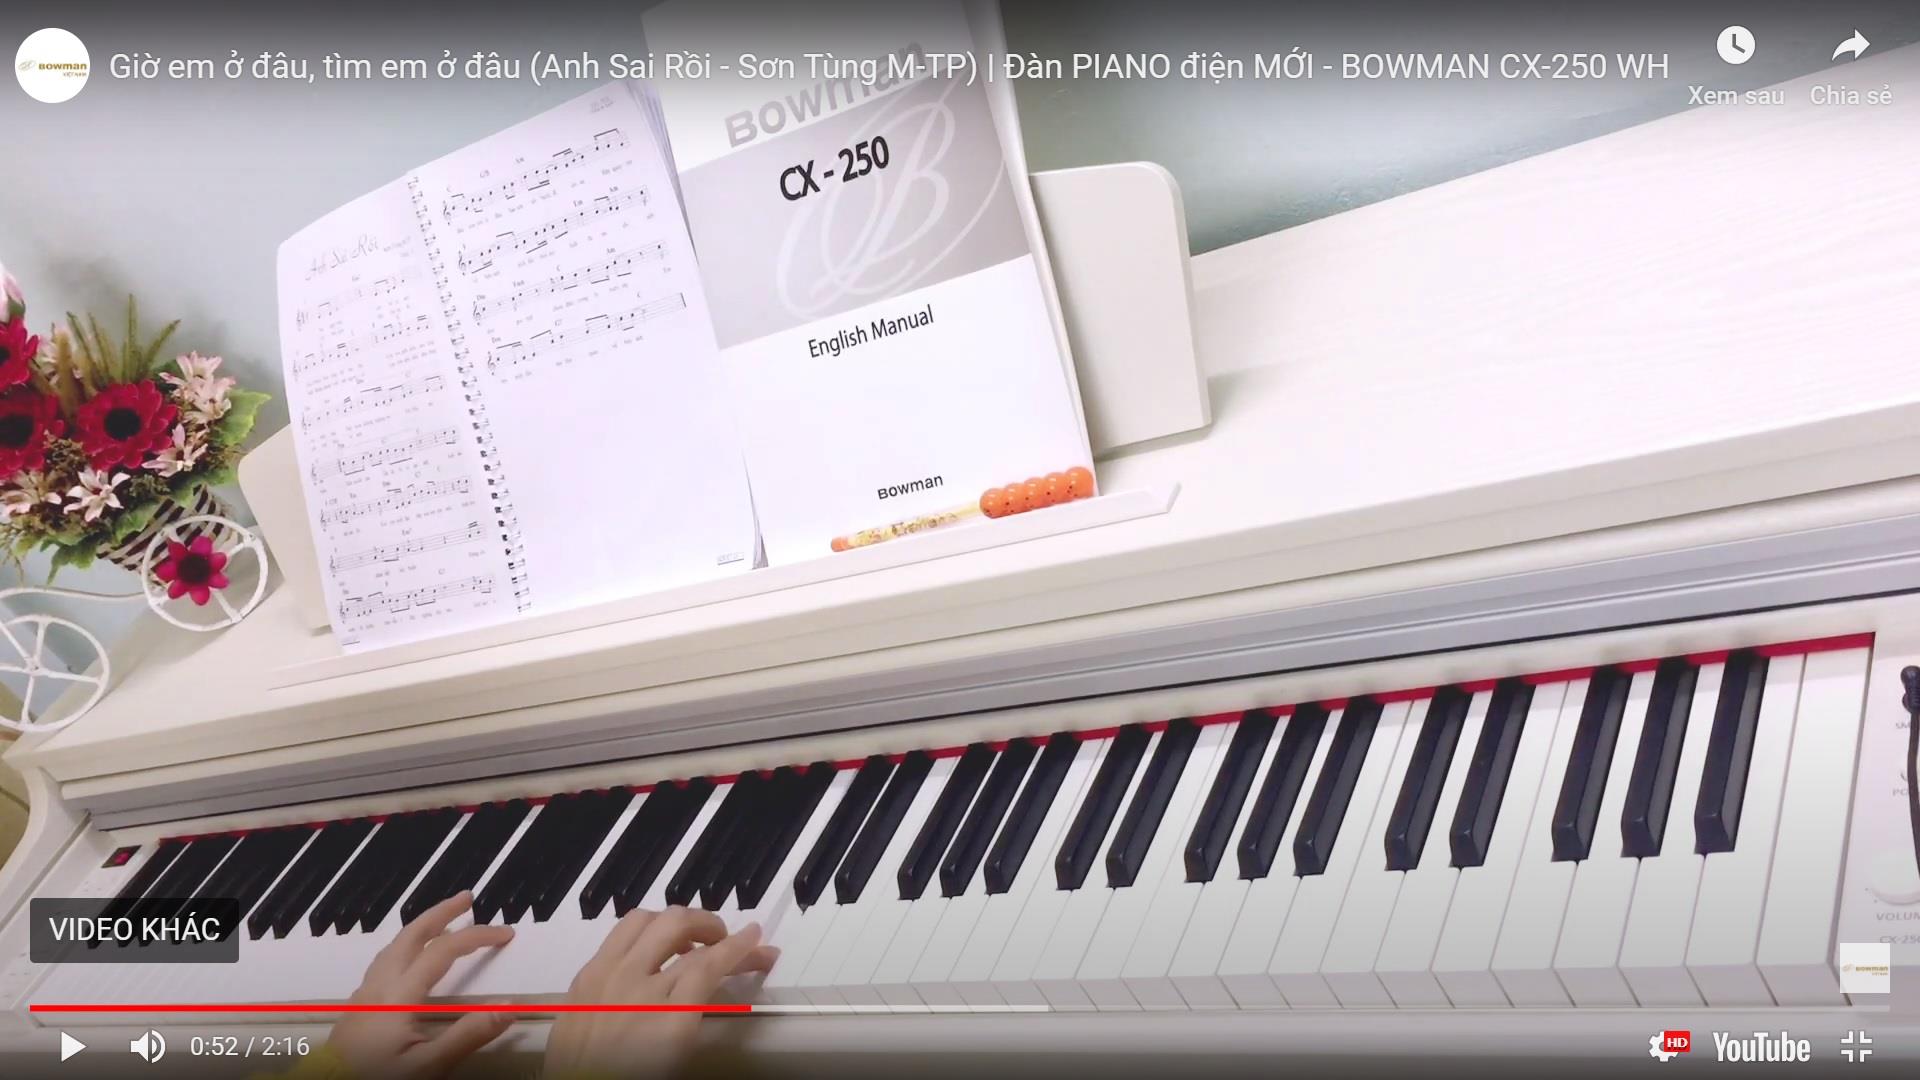 Chỉ với một cây đàn piano đầy lãng mạn, MV Tìm Em Ở Đâu đã chinh phục nửa triệu khán giả yêu nhạc chỉ trong vòng 24h. Thưởng thức bản nhạc của Trung Quân Idol đầy cảm xúc cùng những cảnh quay đẹp như tranh vẽ trong MV này.